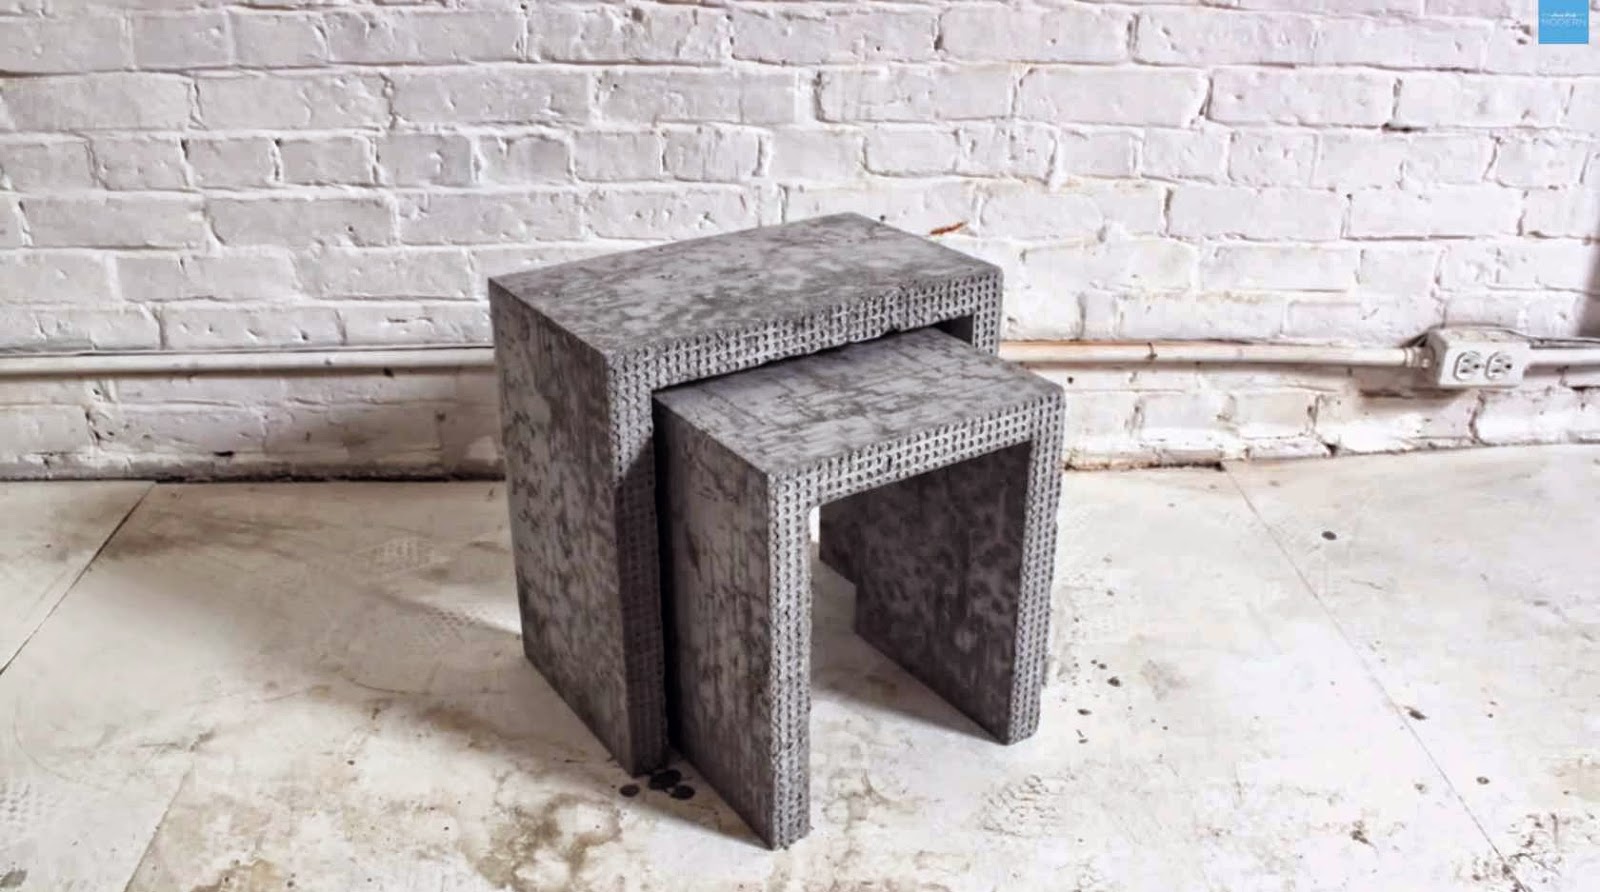 DIY Concrete Side Table